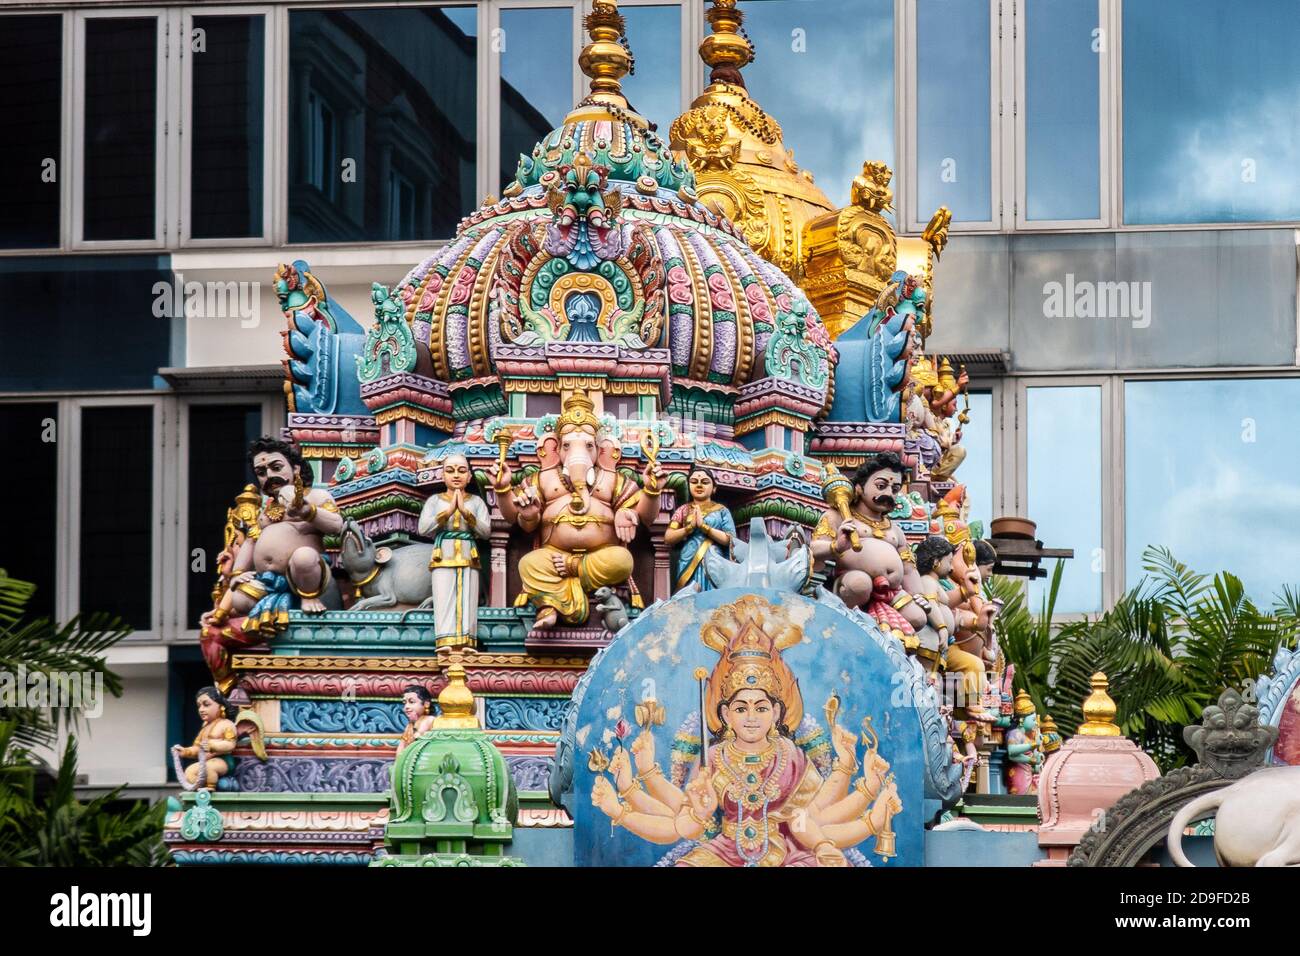 Sri Veeramakaliamman Templo dedicado a la diosa hindú Kali, con ricamente decorado tallado techo colorido con dioses hindúes en la pequeña India, Singapur Foto de stock